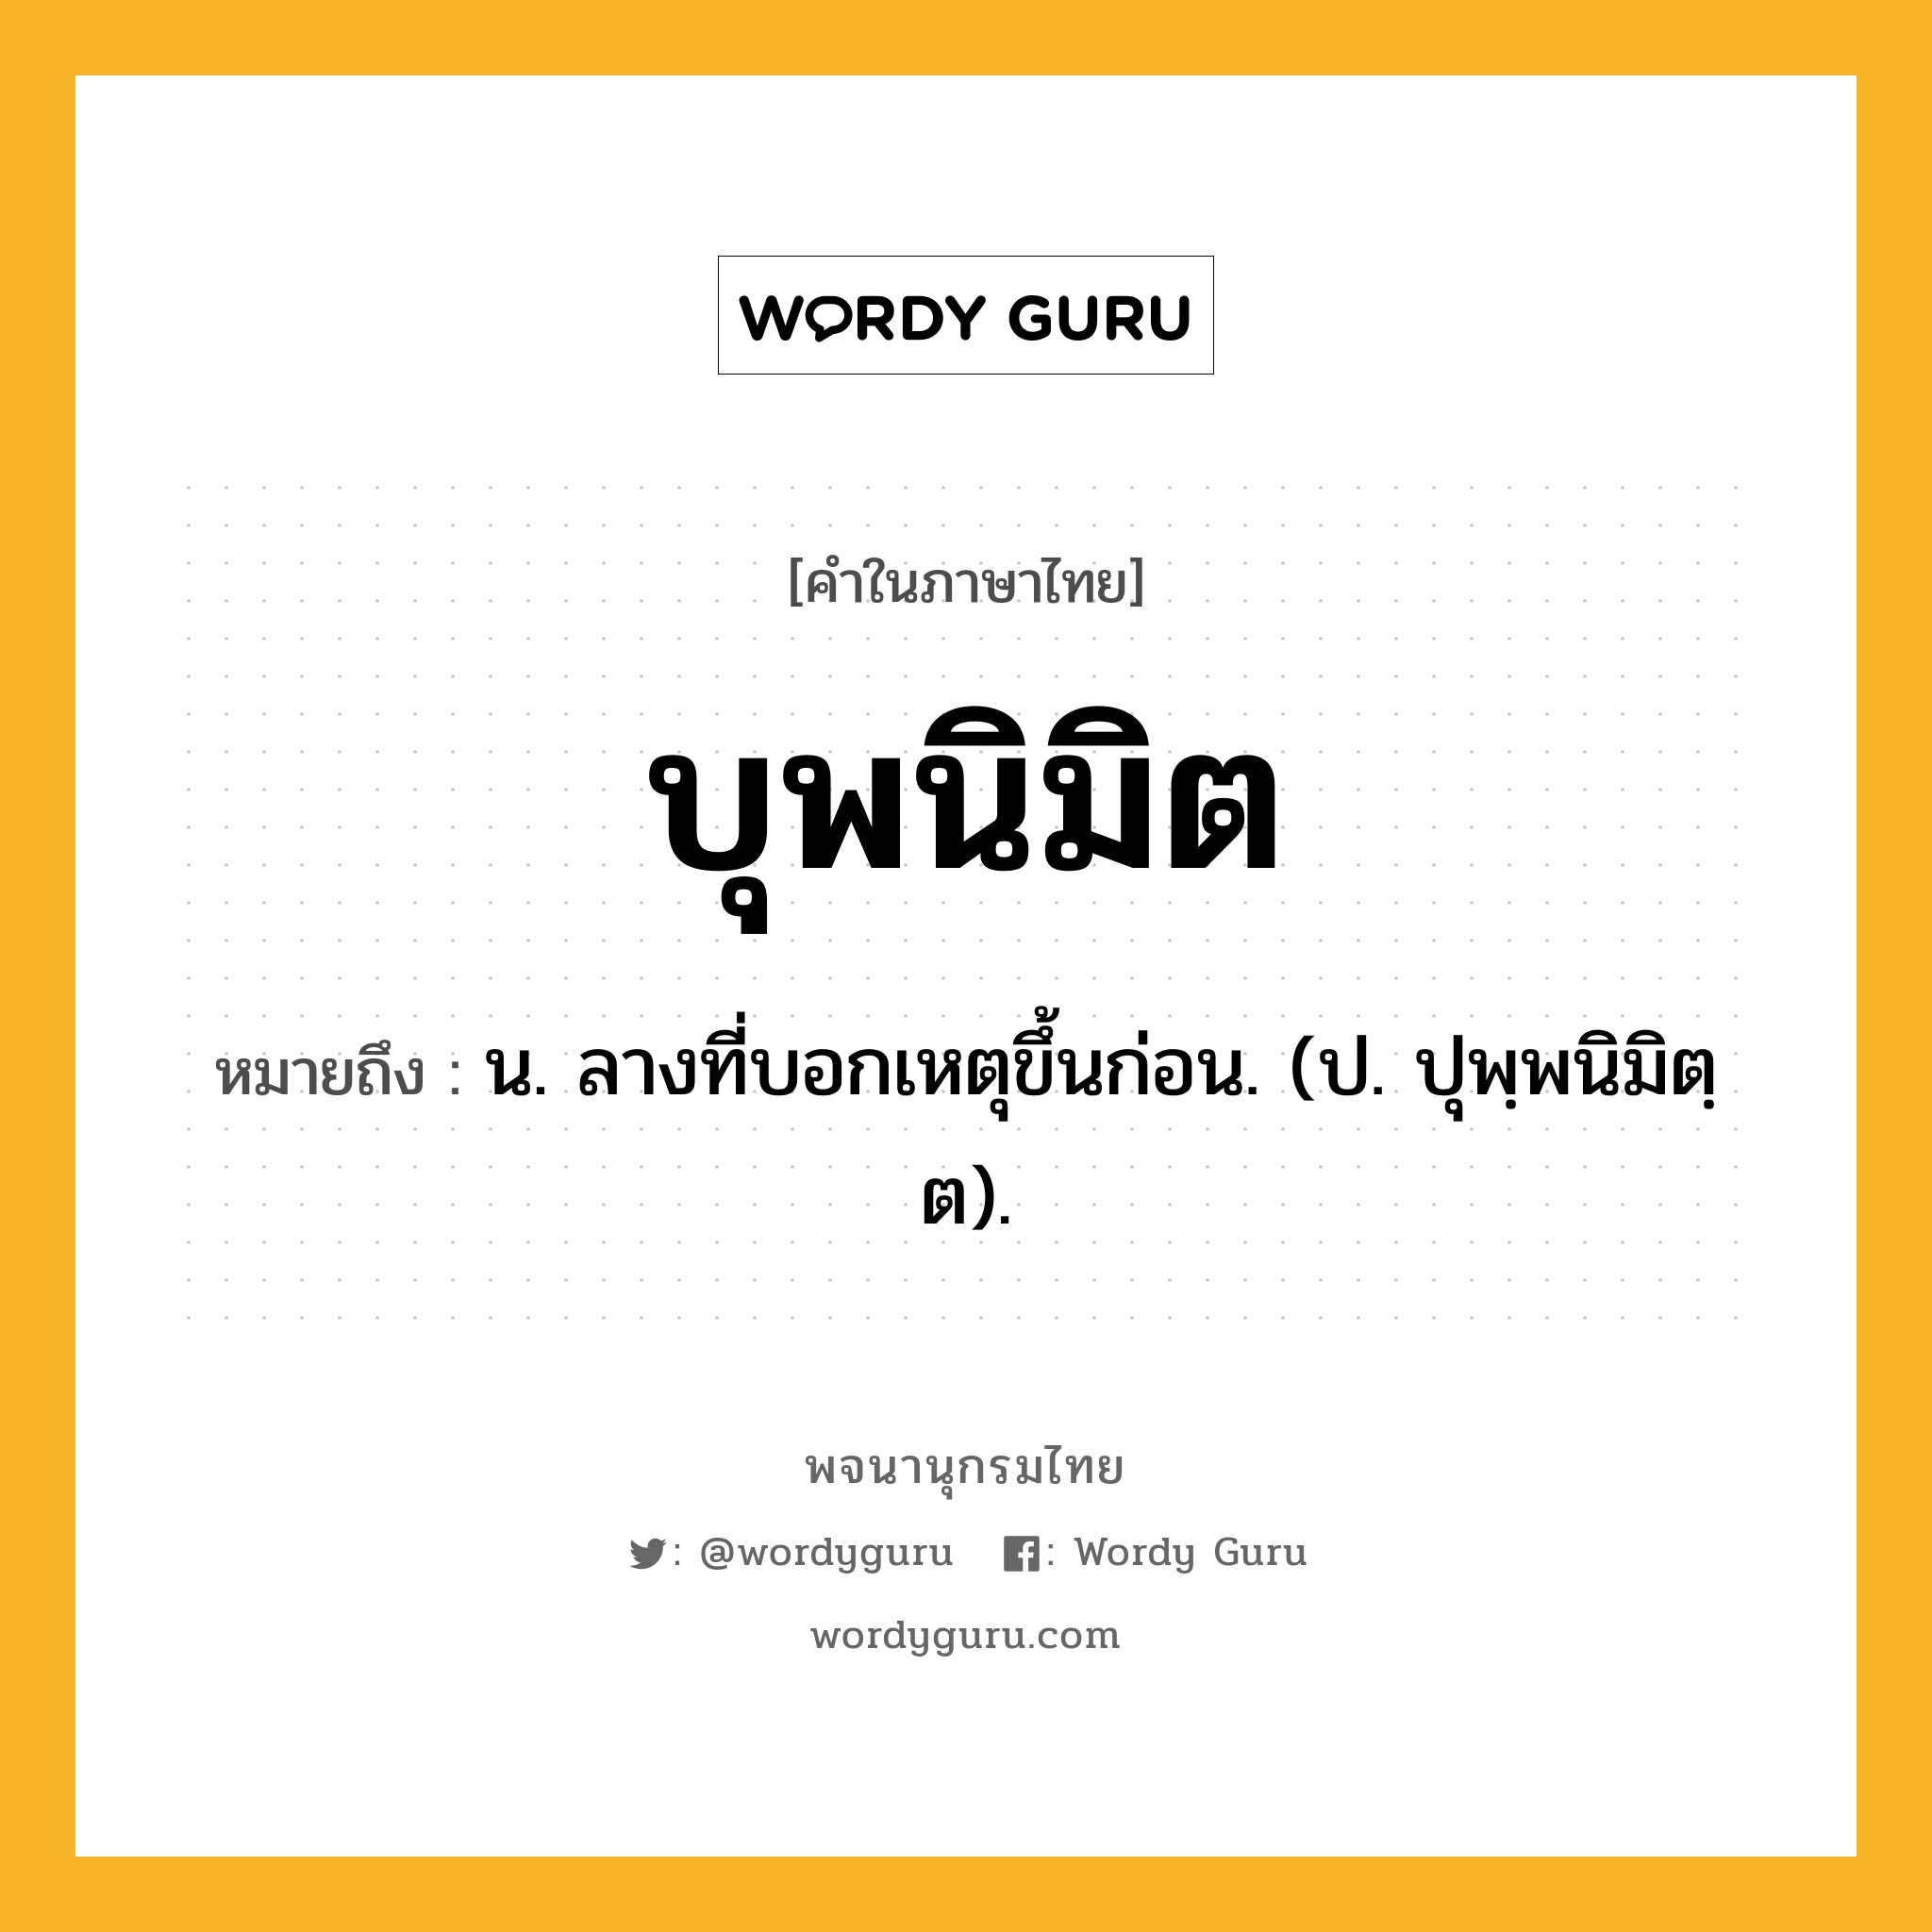 บุพนิมิต ความหมาย หมายถึงอะไร?, คำในภาษาไทย บุพนิมิต หมายถึง น. ลางที่บอกเหตุขึ้นก่อน. (ป. ปุพฺพนิมิตฺต).